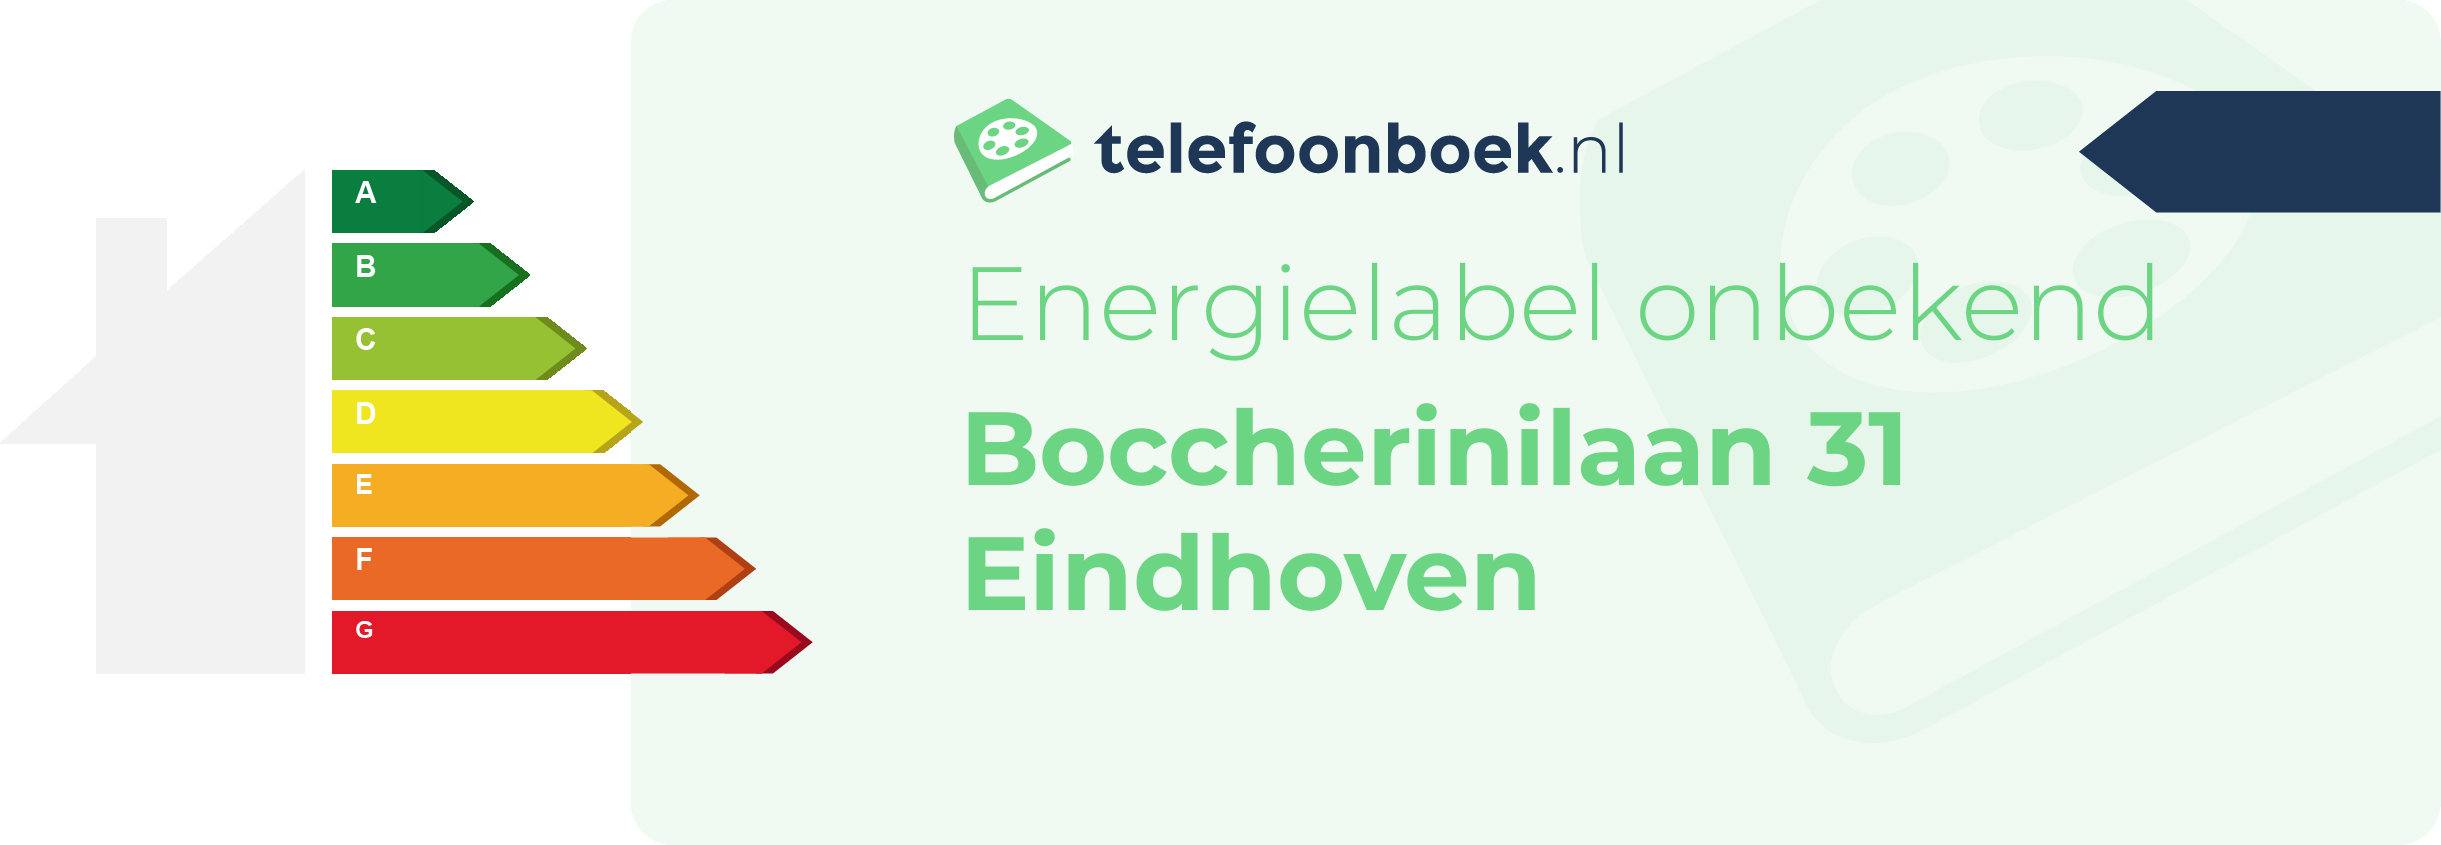 Energielabel Boccherinilaan 31 Eindhoven